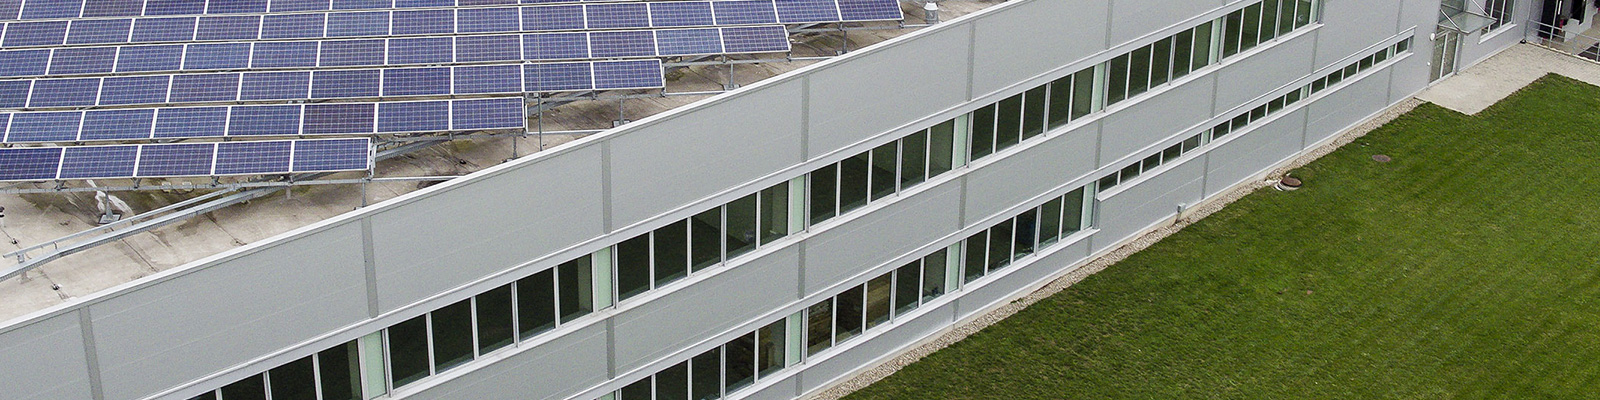 Photovoltaik-Anlagen für Gewerbebetriebe